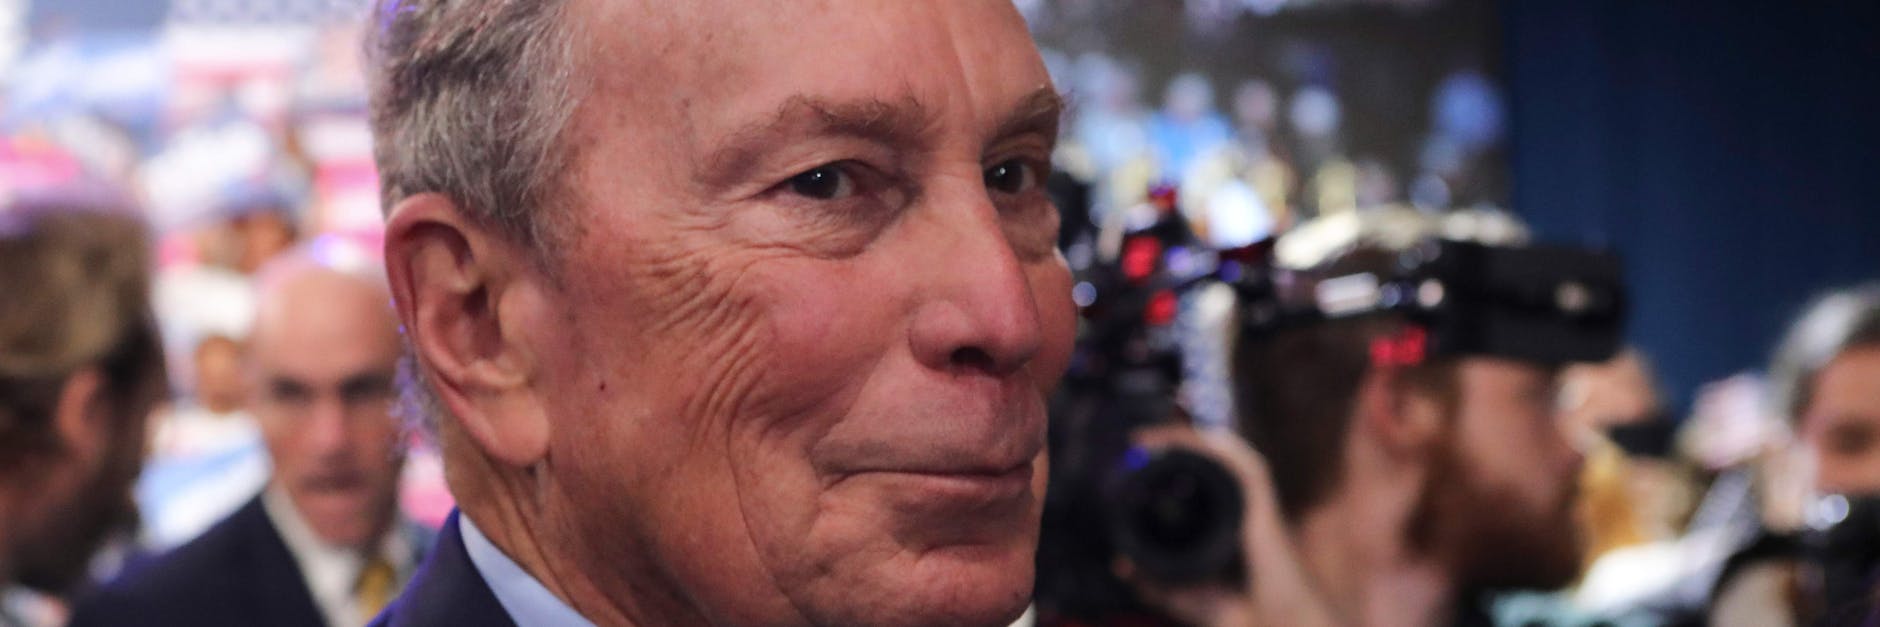 Milliardär Mike Bloomberg ist aus dem Kandidatenwettbewerb der US-Demokraten ausgeschieden.